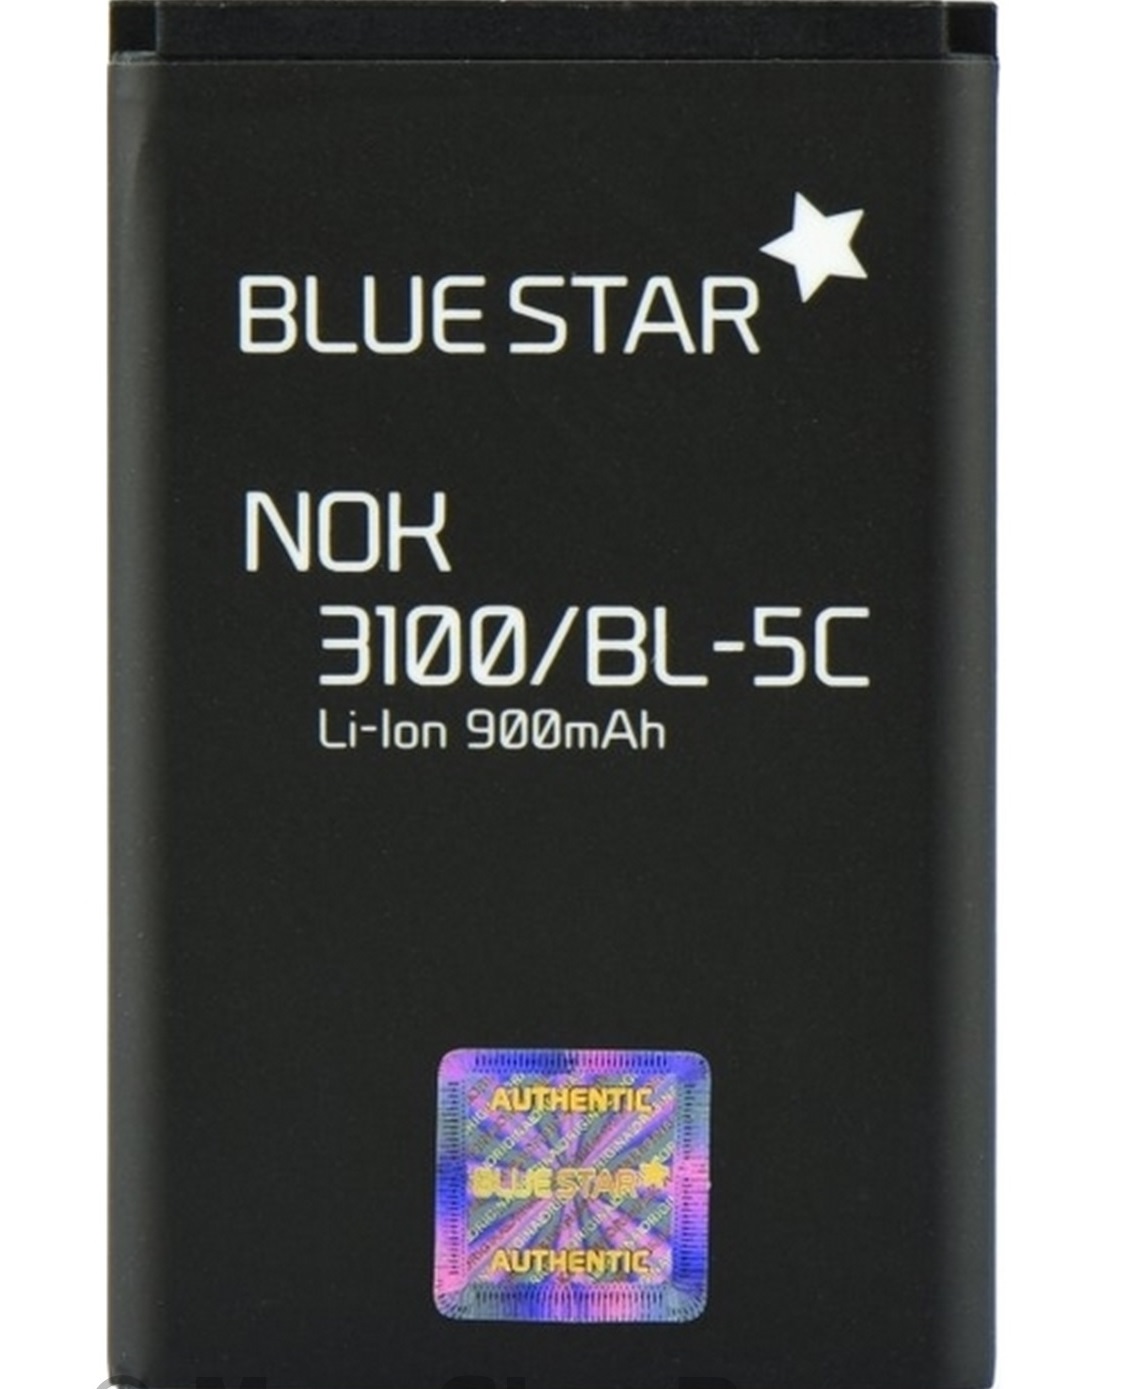 BATTERIA BLUESTAR BL-5C COMPATIBILE NOKIA 3100